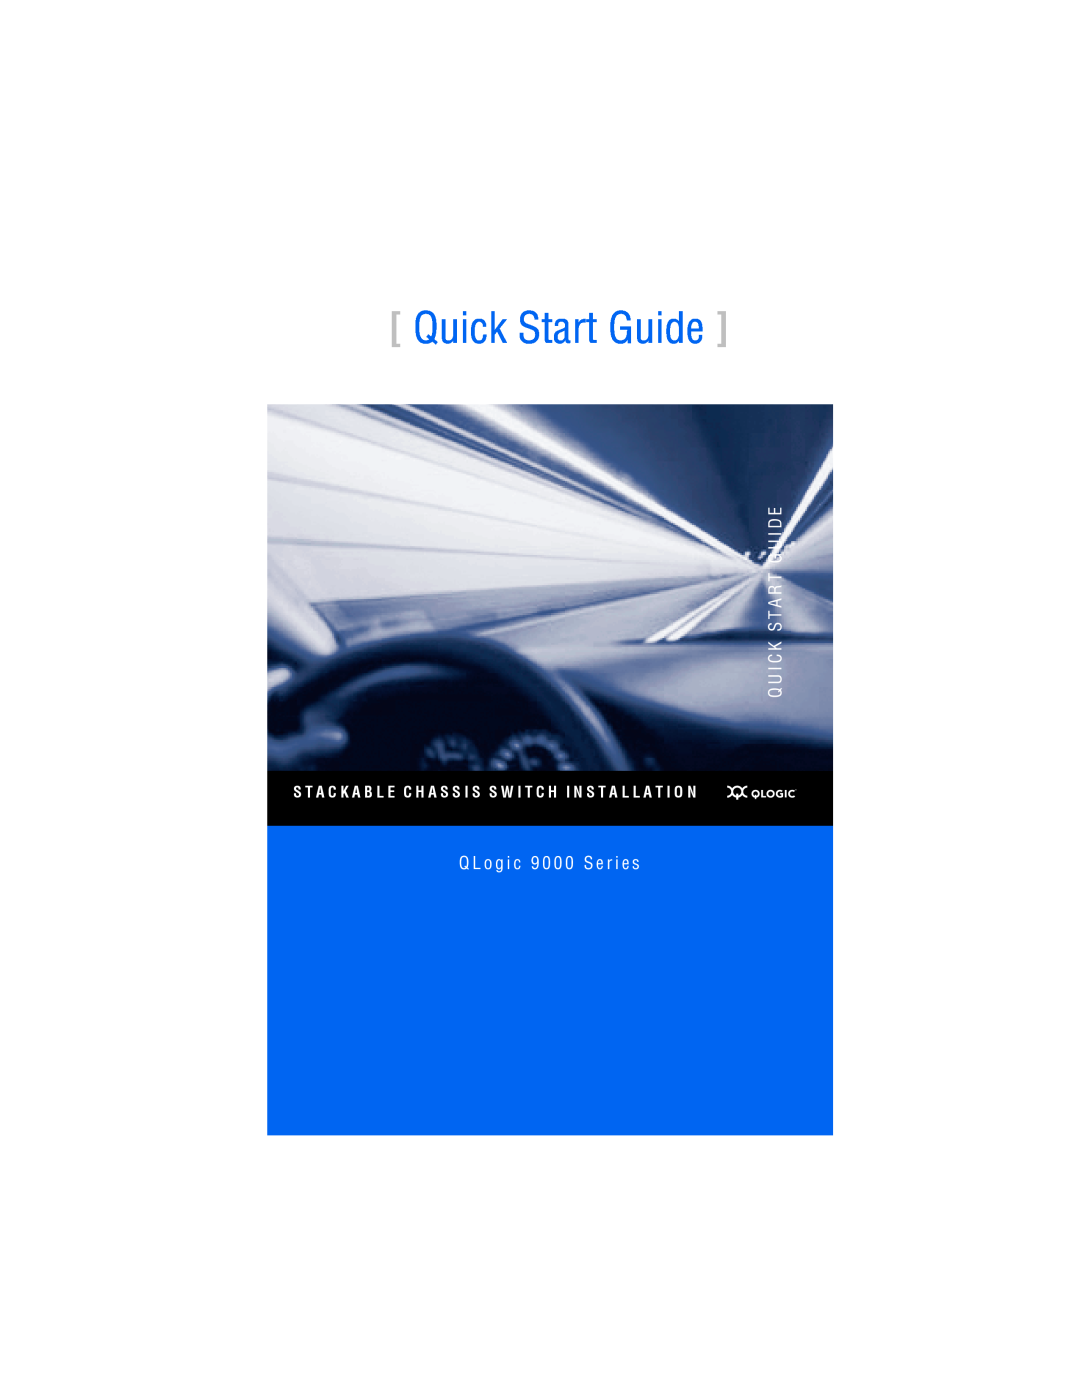 Q-Logic 9000 quick start Quick Start Guide, Q U I C K S T A R T G U I D E, Q L o g i c 9 0 0 0 S e r i e s 